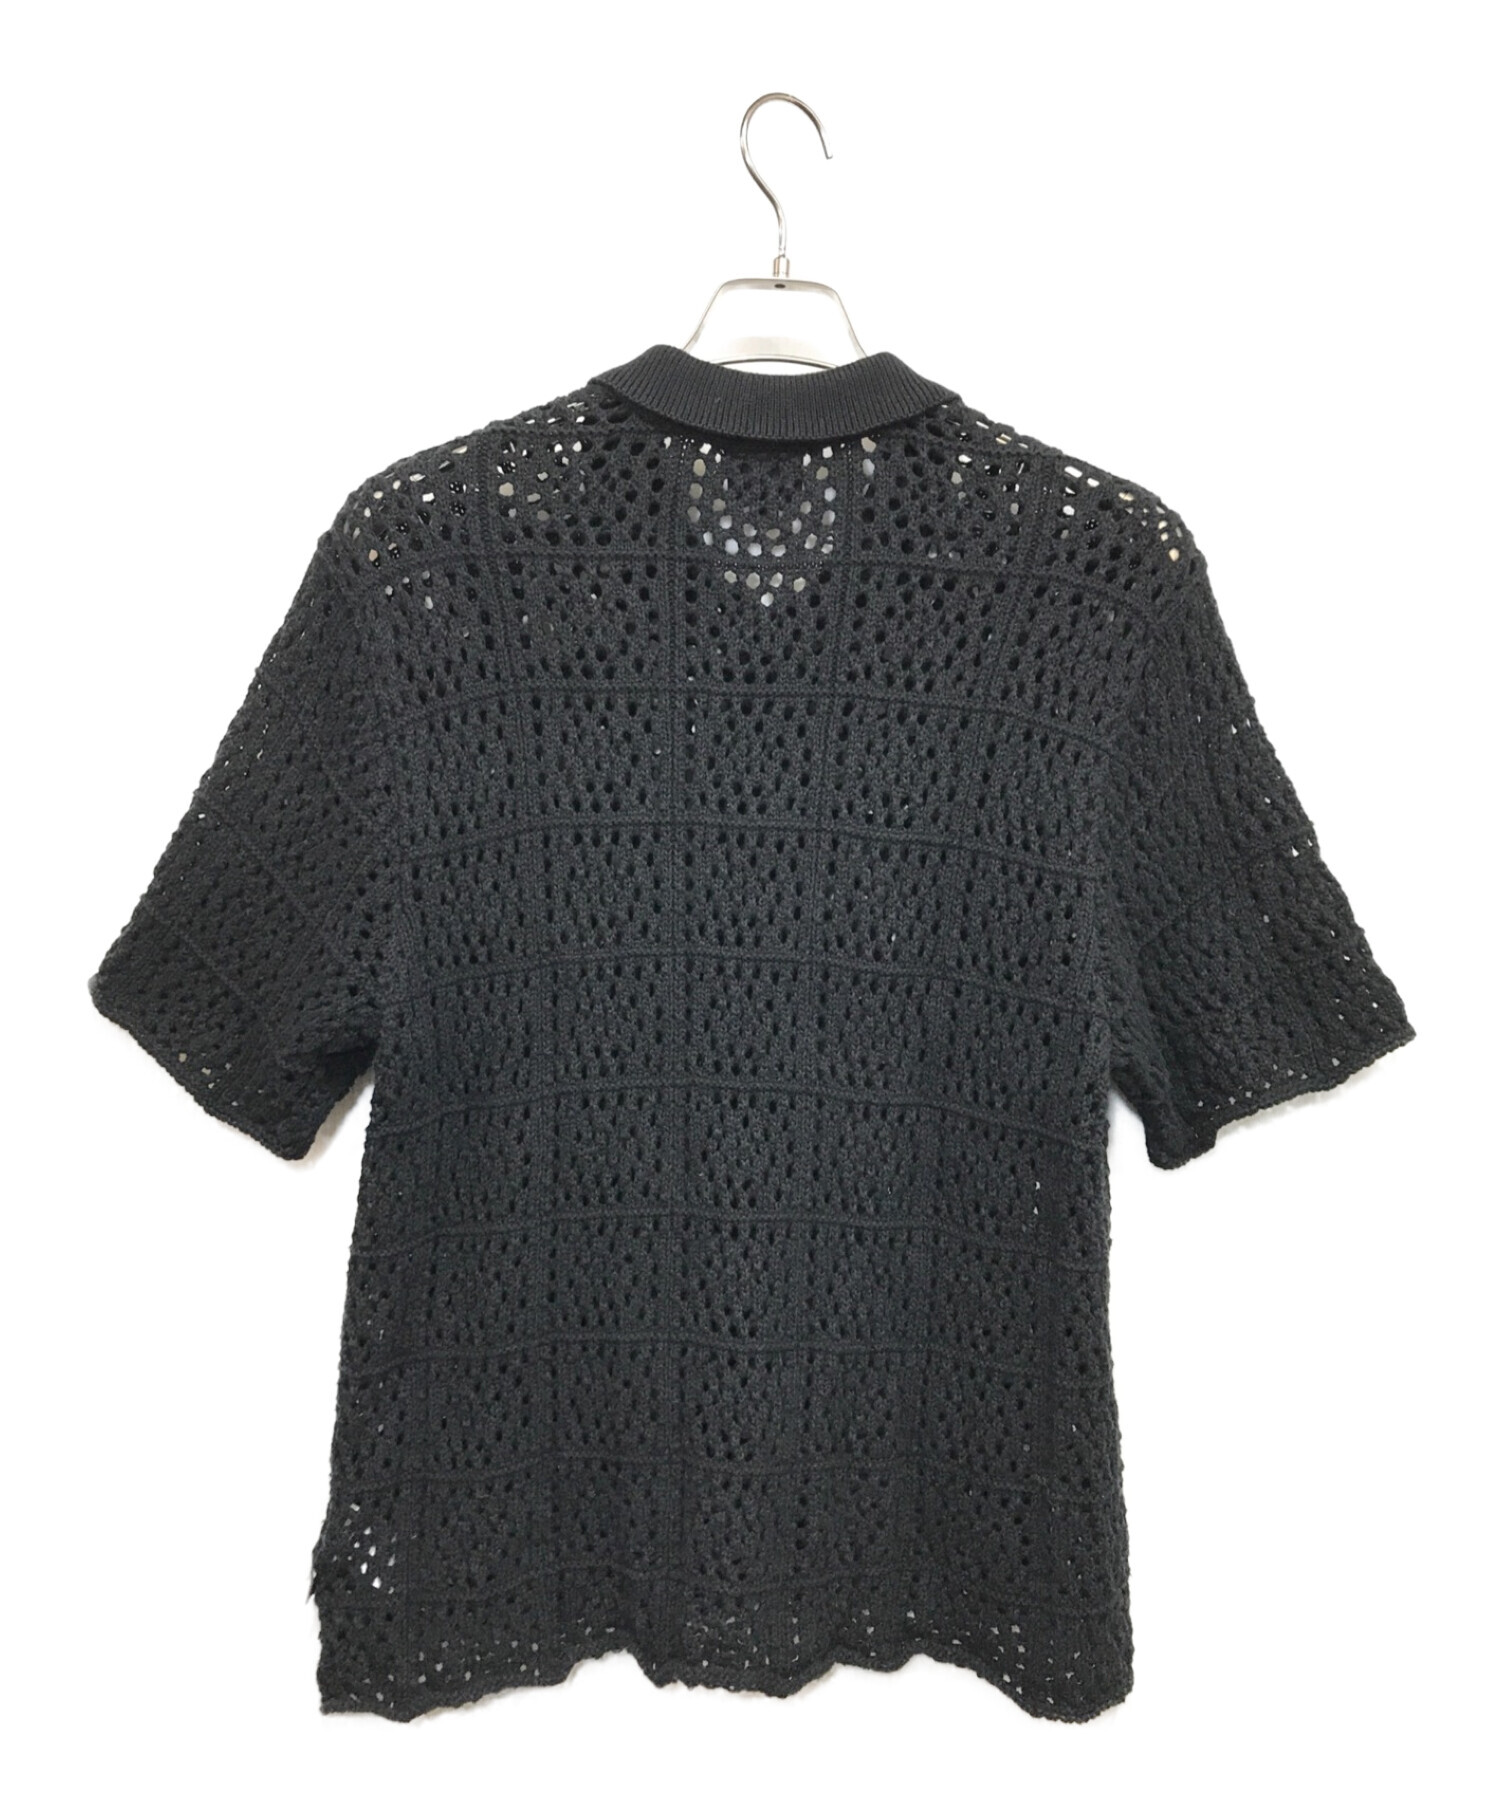 激安な stussy crochet shirt black 黒 ニットシャツ メッシュ